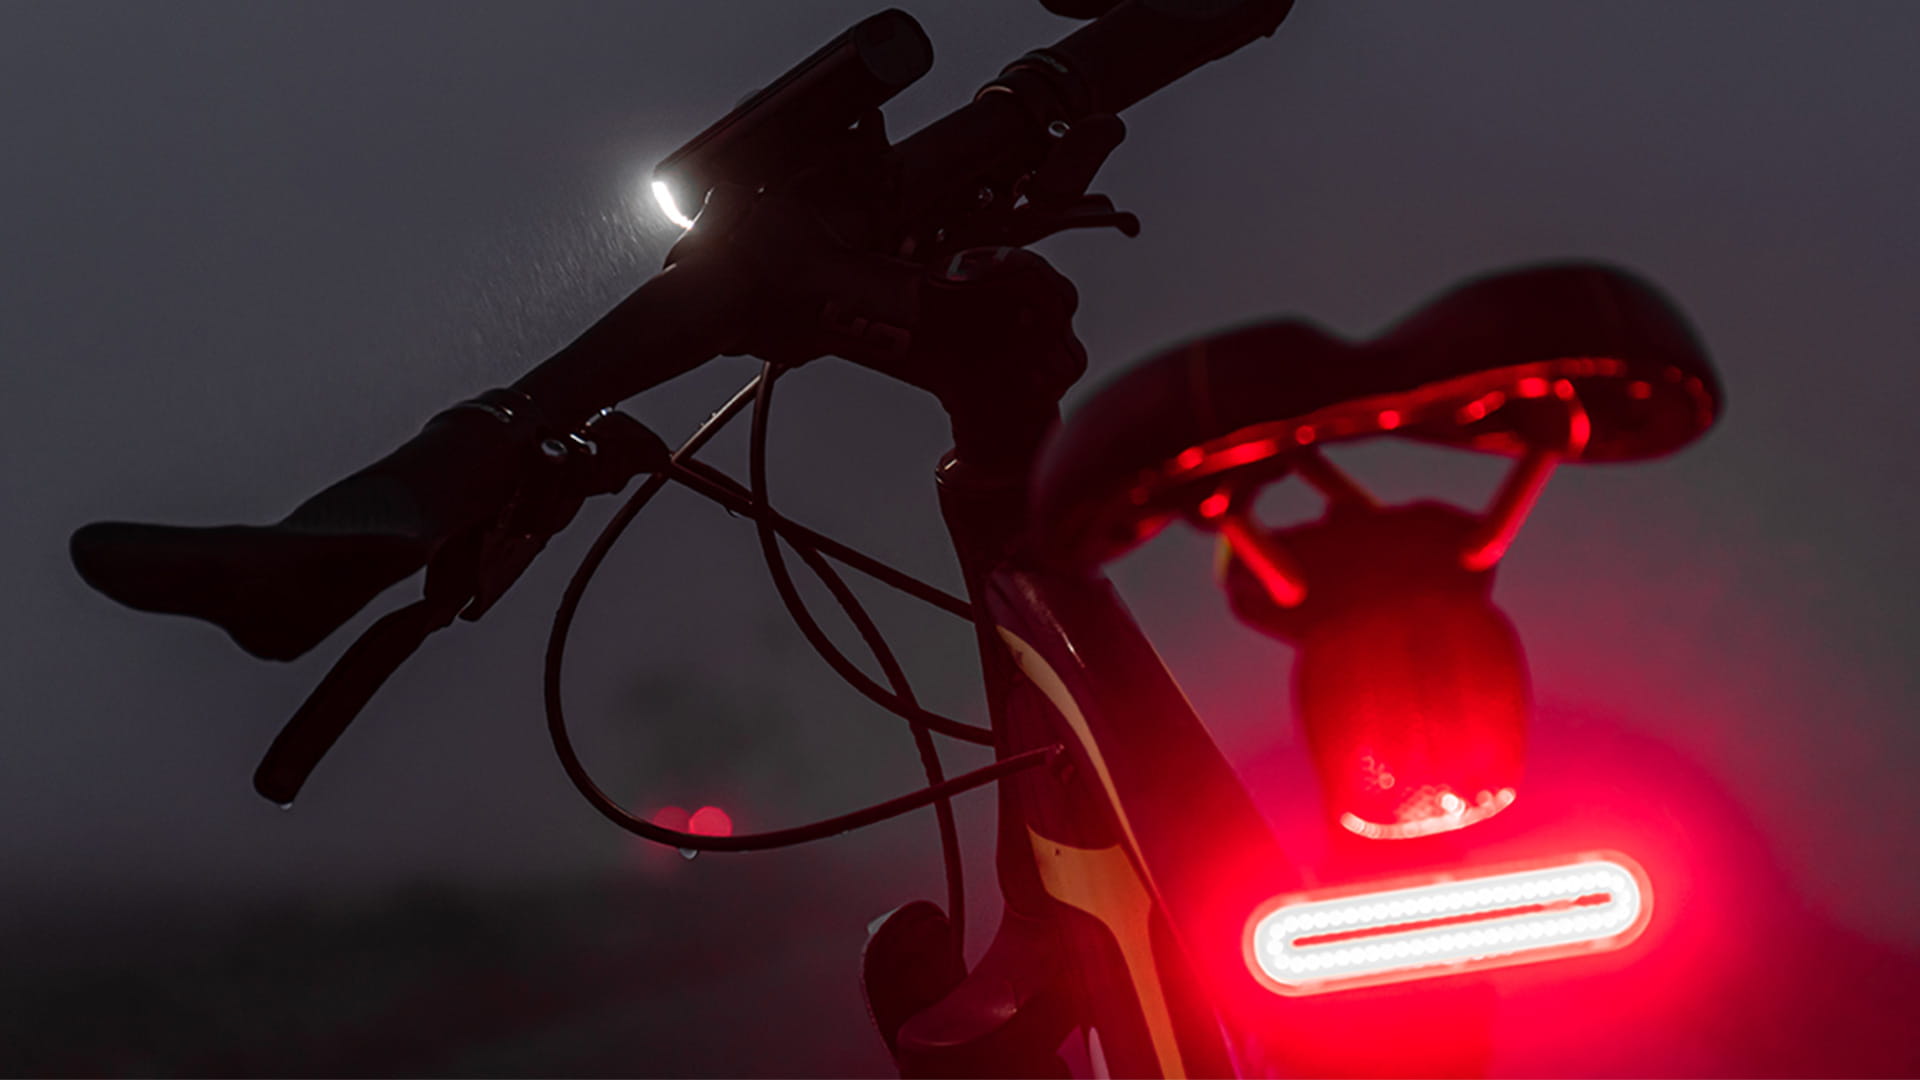 Bike brake lights